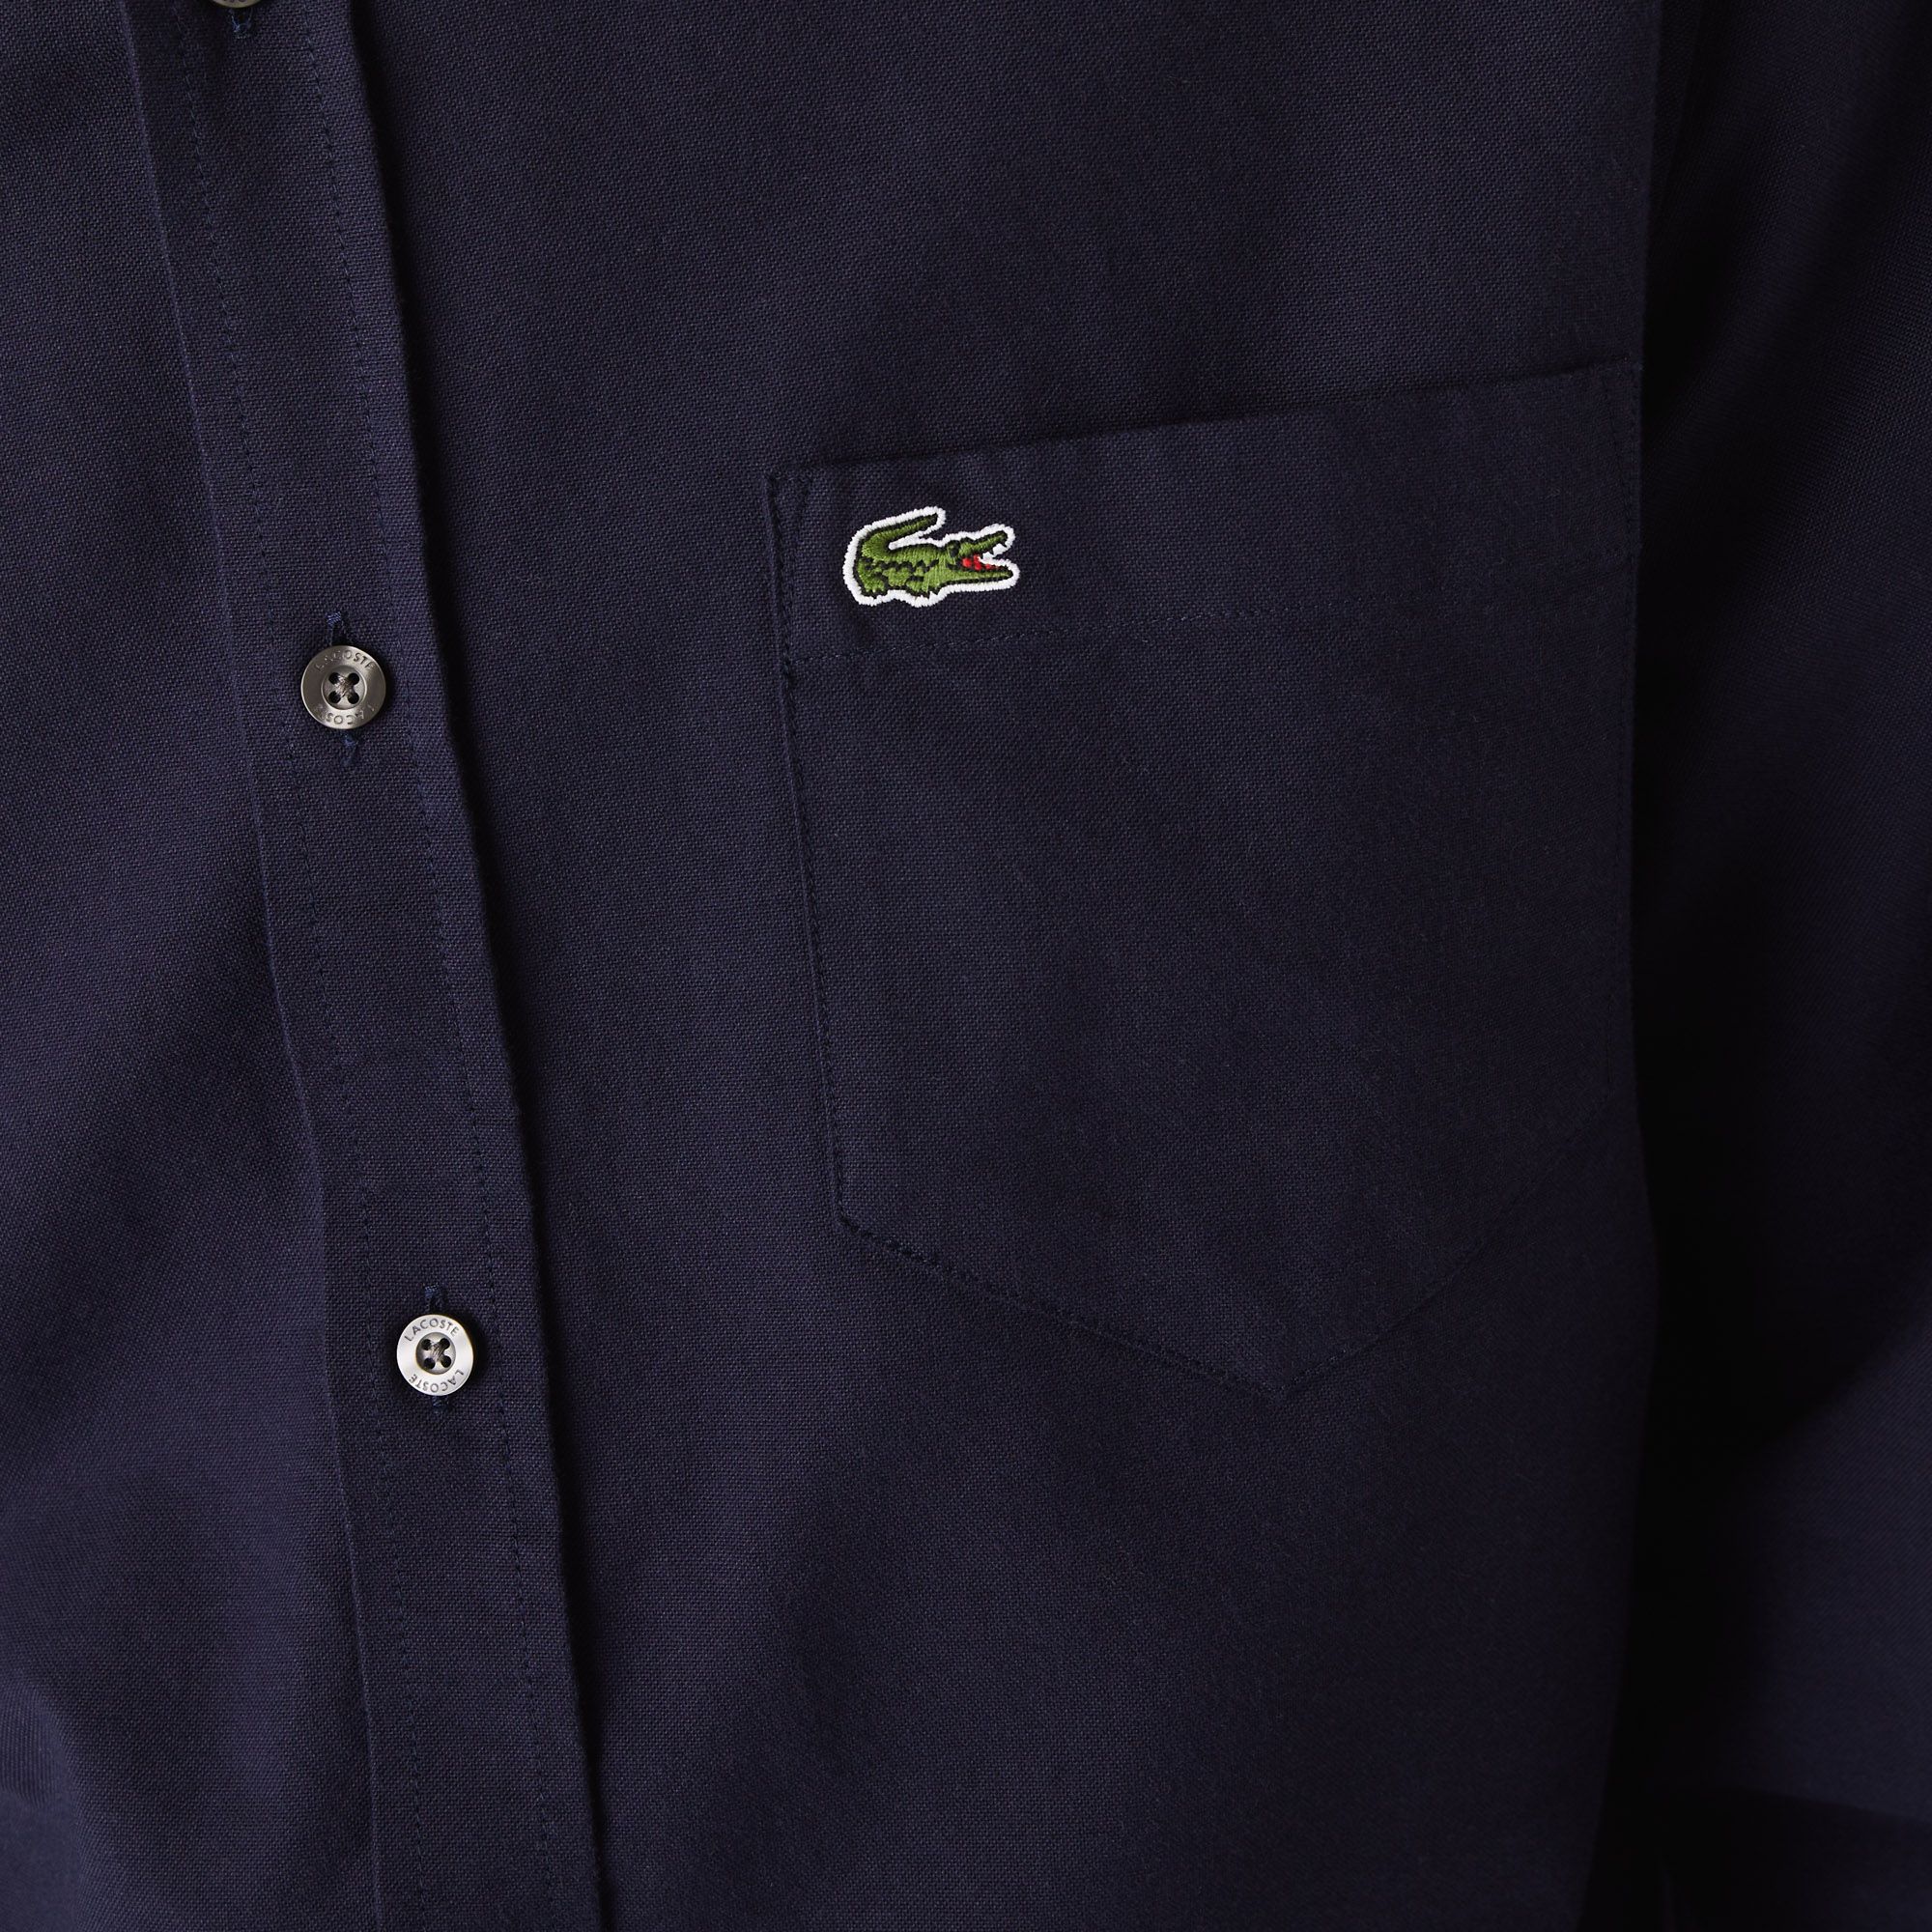  Lacoste Oxford Cotton Shirt - Dark Navy (Regular) 